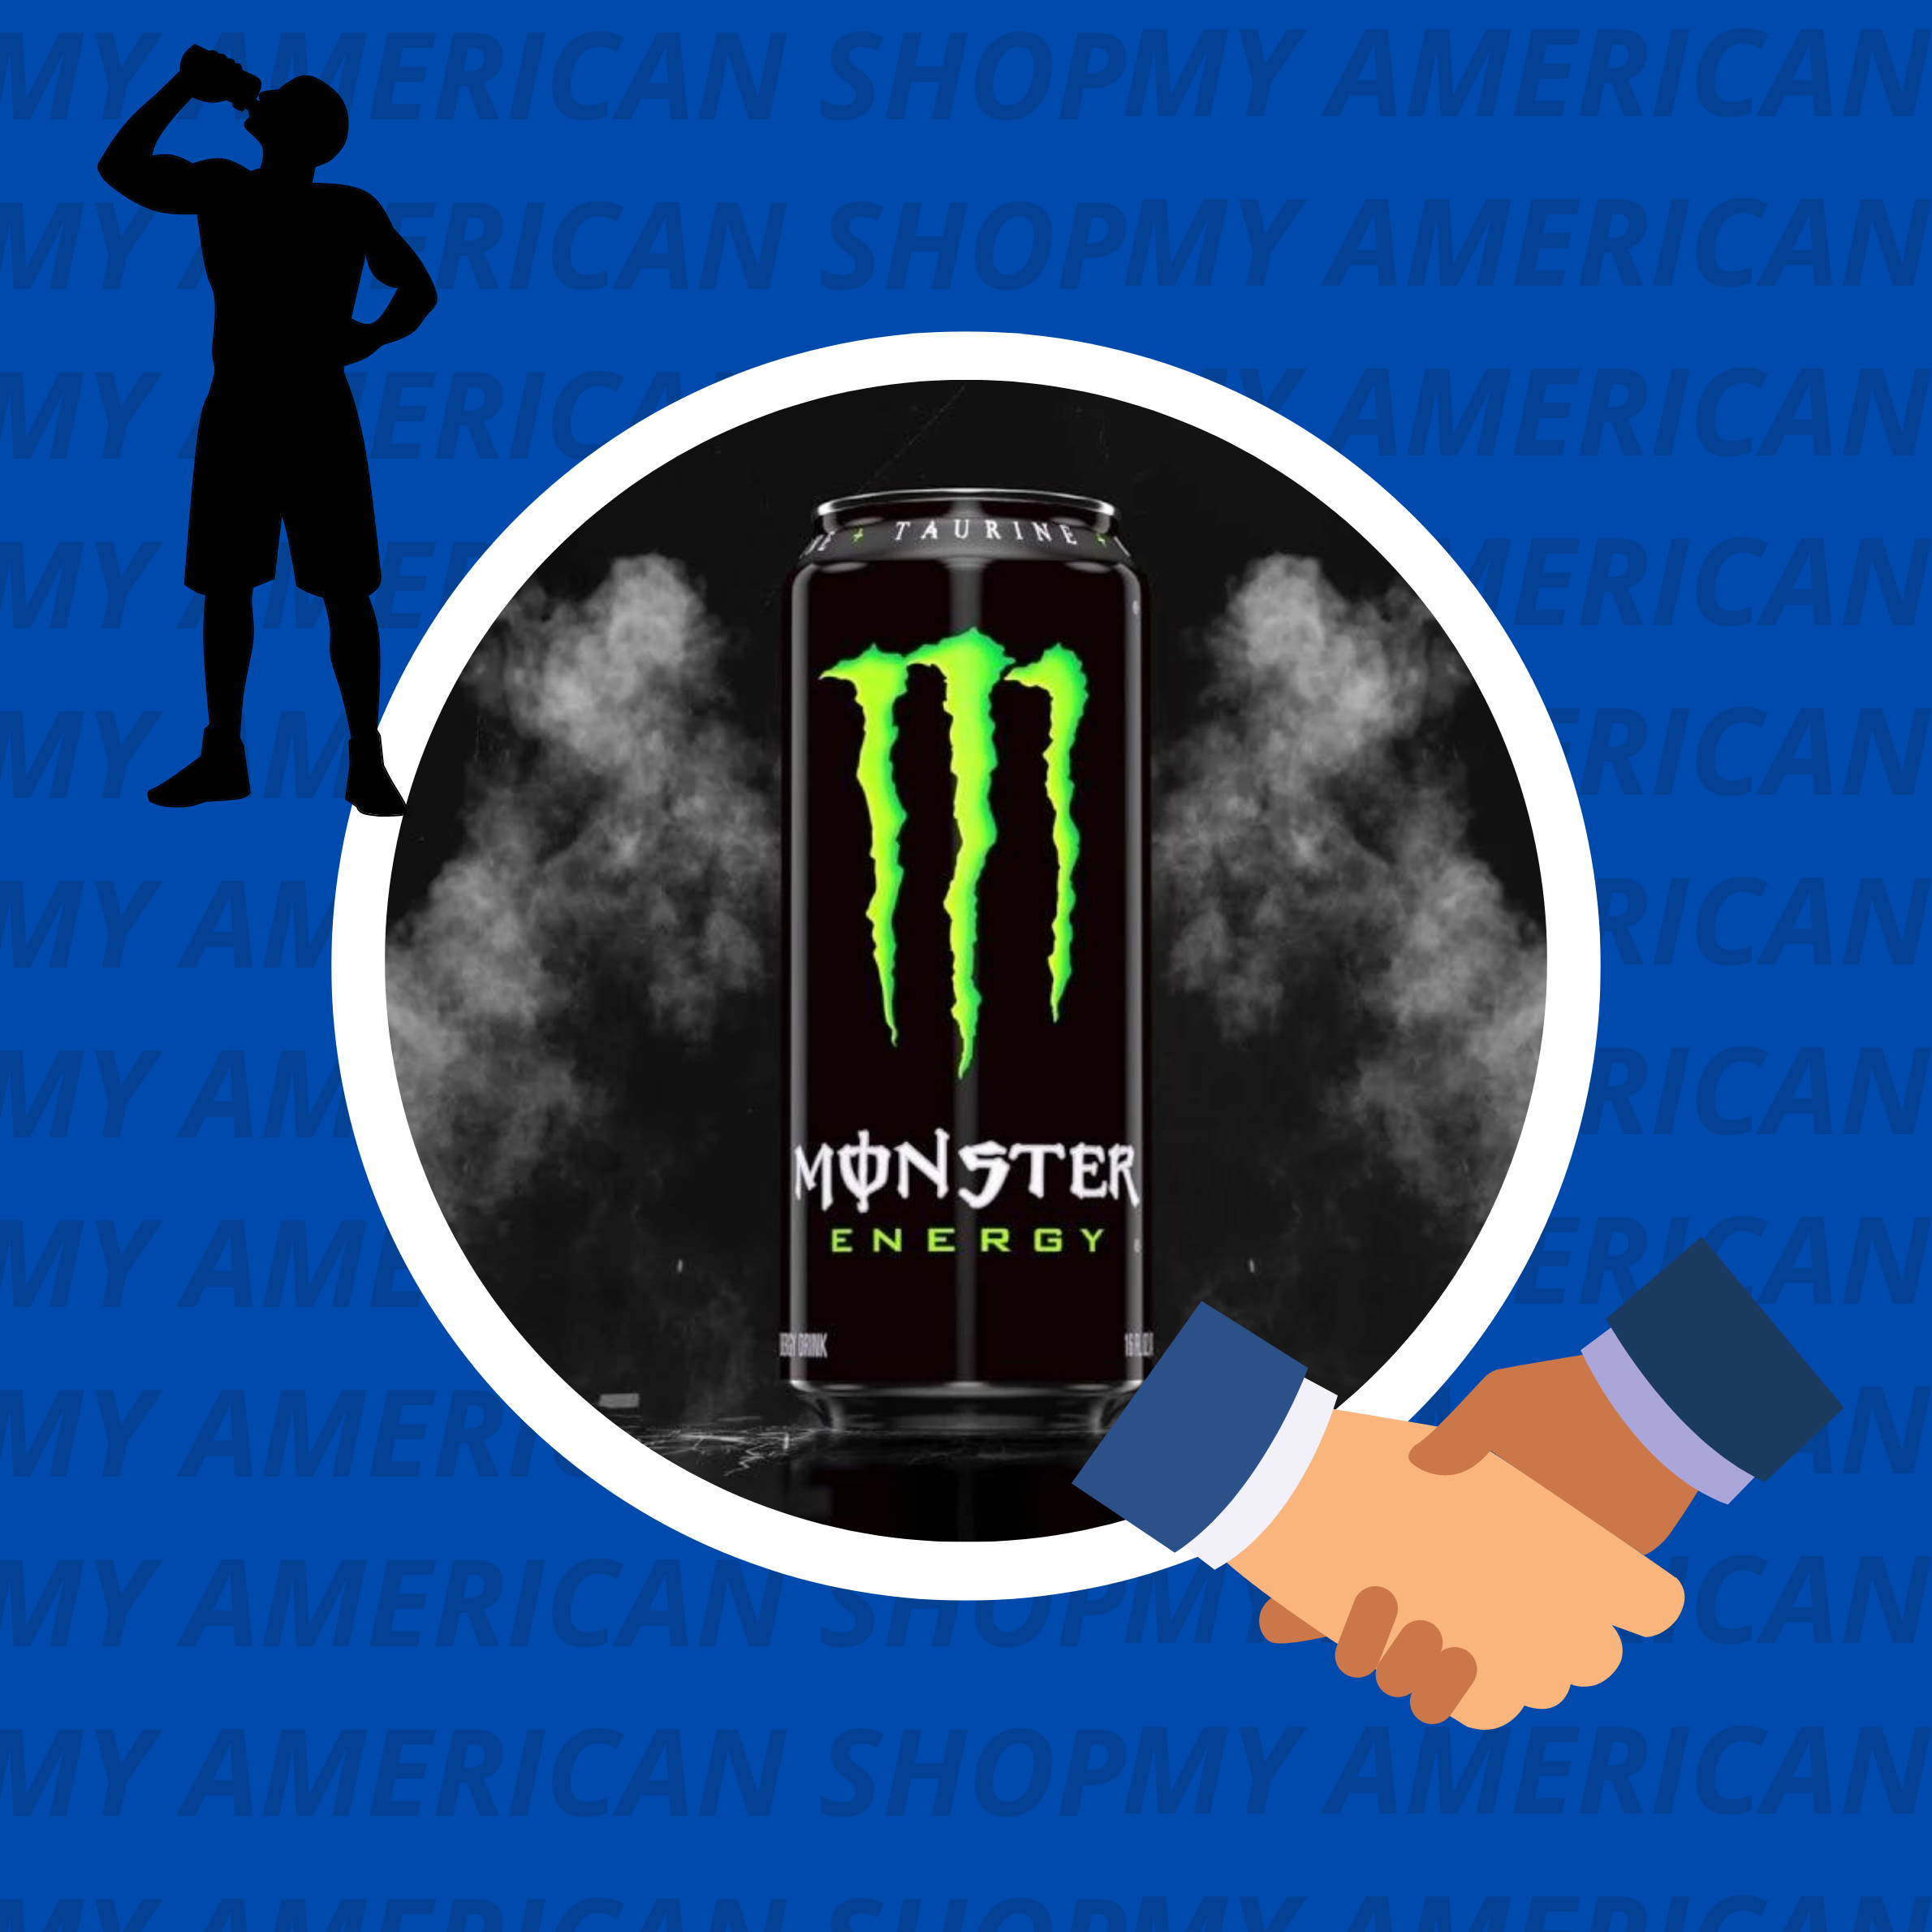 Découvrez les collaborations passionnantes de Monster Energy !